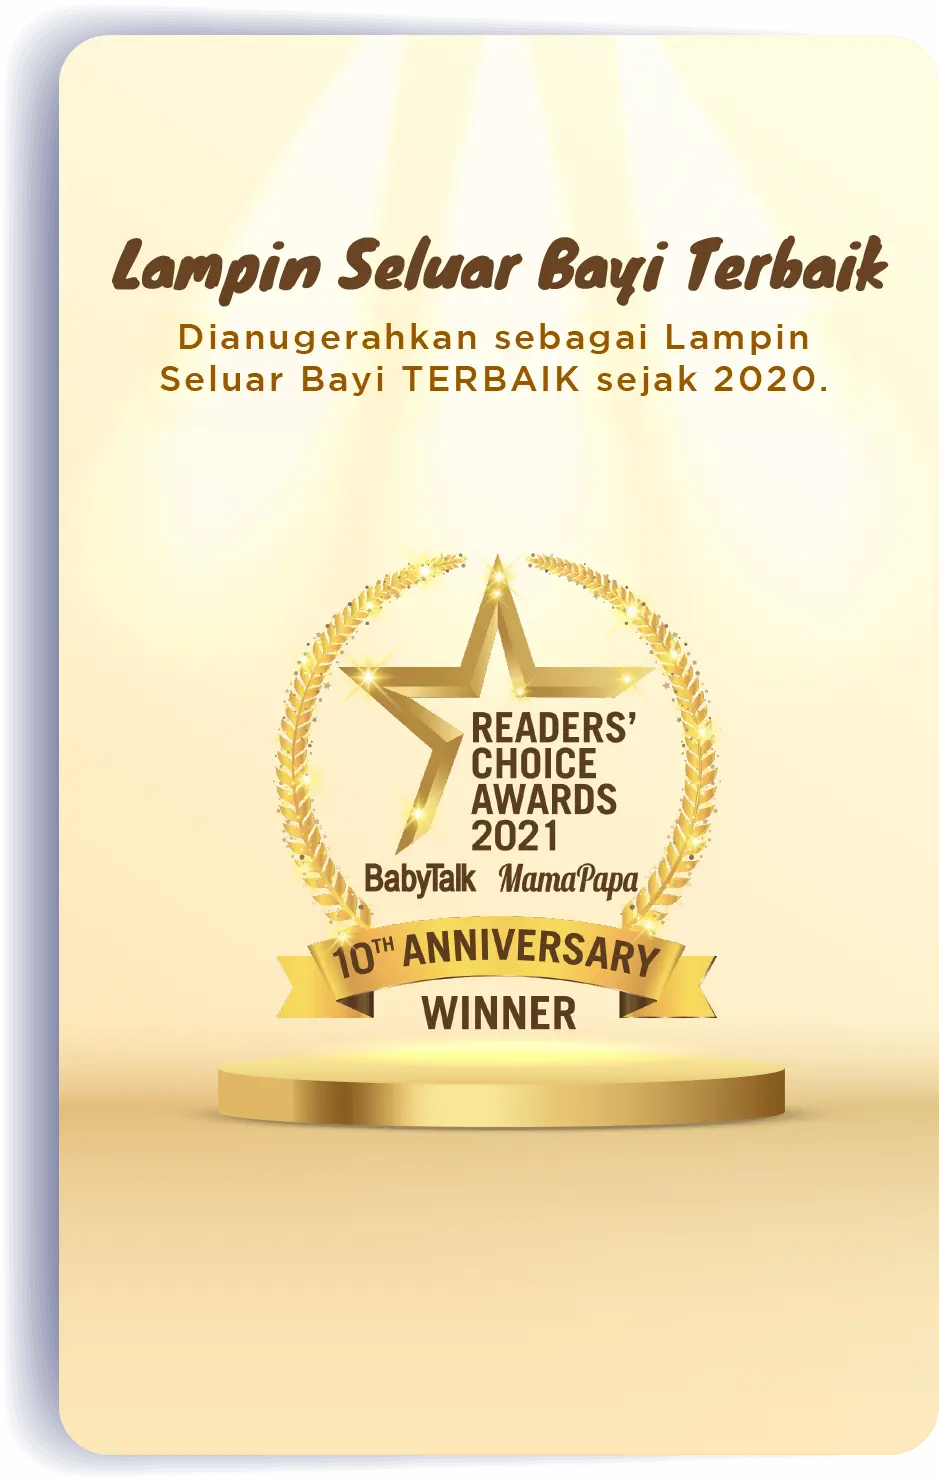 Lampin Seluar Bayi Terbaik: Lampin Seluar Bayi Terbaik oleh Readers’ Choice Awards 2020.